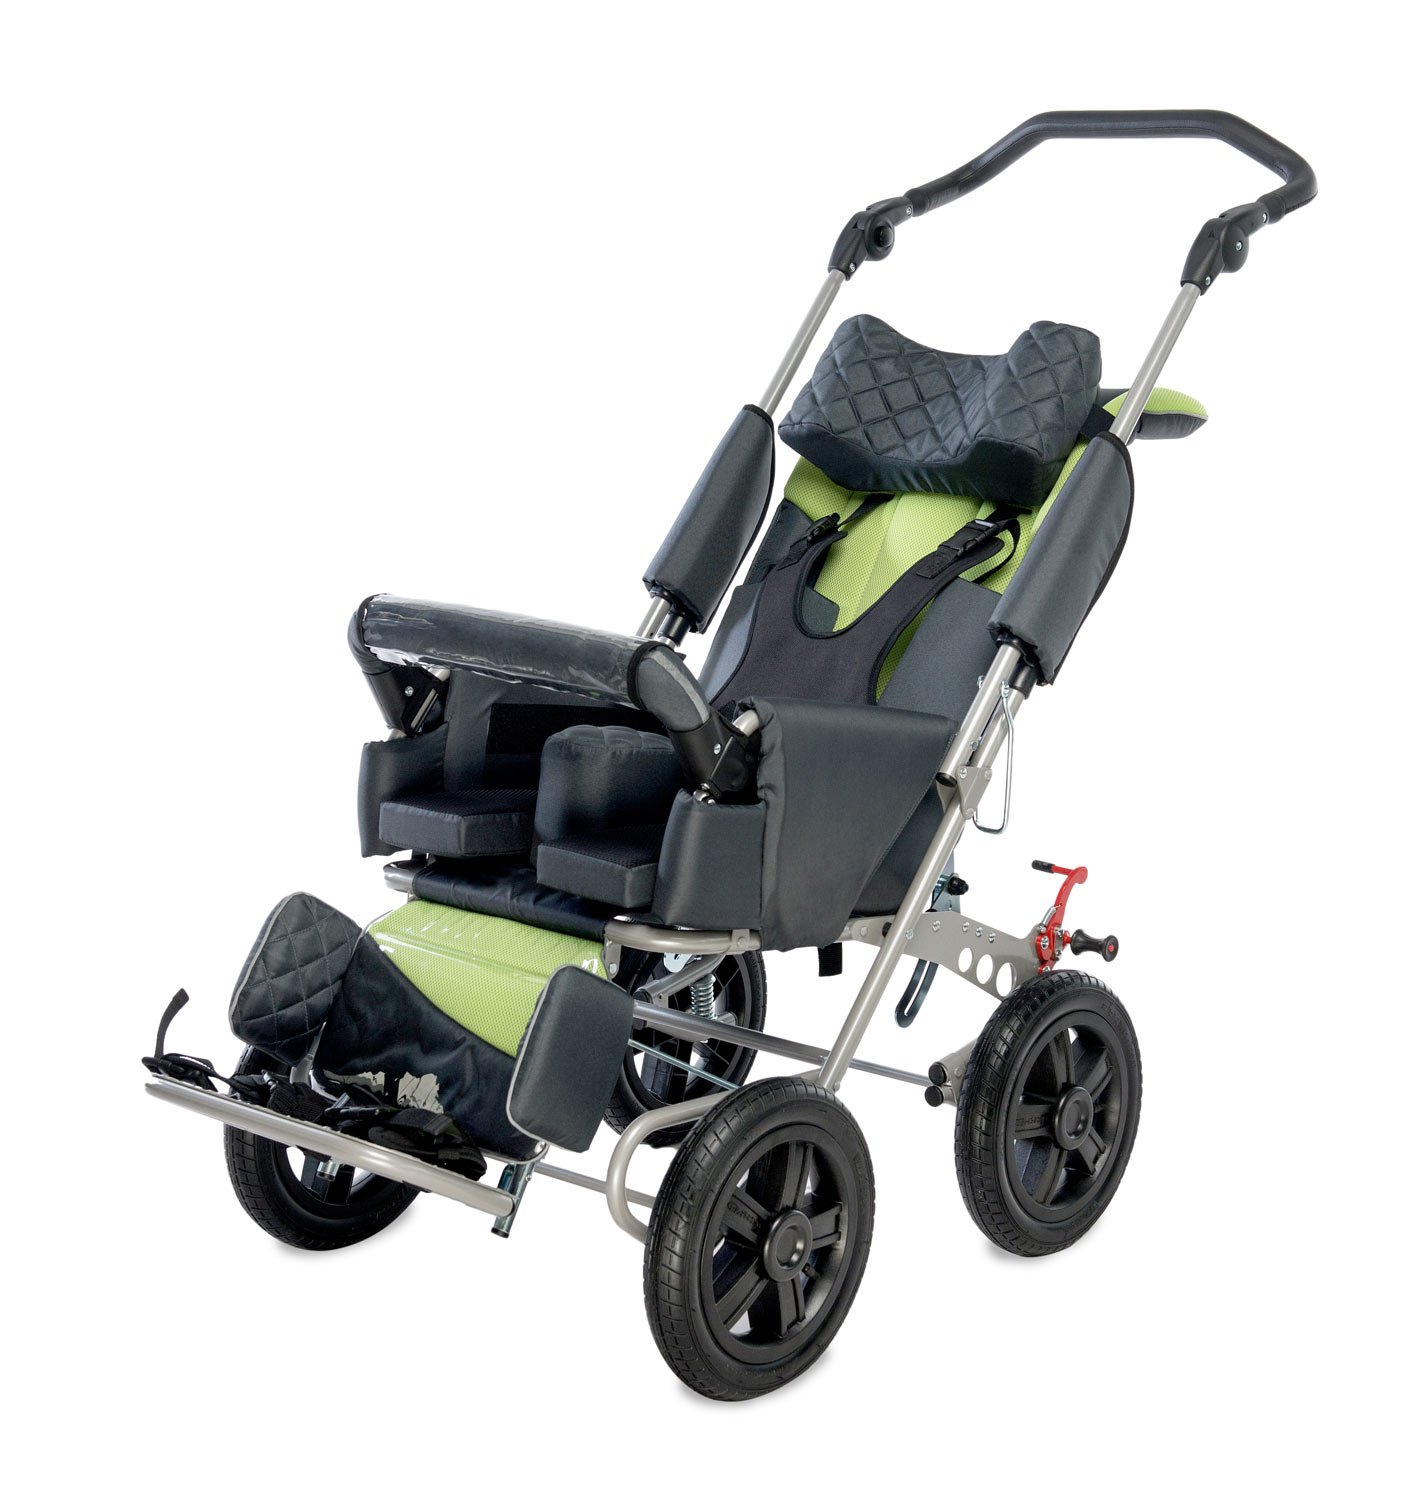 Кресло коляска для инвалида ребенка прогулочная. Коляска рейсер 3 для детей с ДЦП. Коляска рейсер 2 для детей с ДЦП. Коляска рейсер 4 для детей с ДЦП. Коляски рейсер для детей с ДЦП 3 размер.